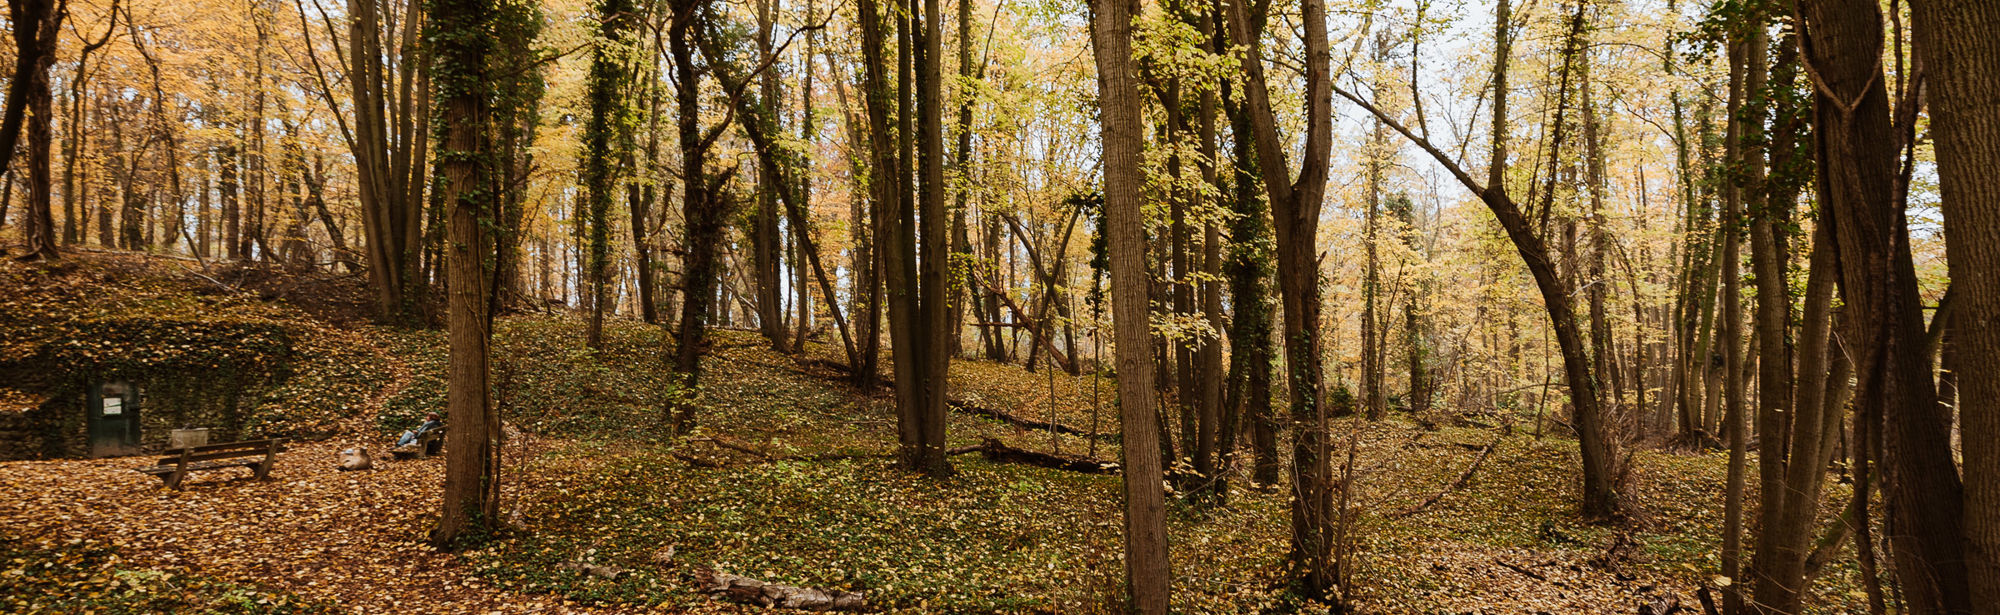 Wandel vanuit het herfstachtige Savelsbos richting de vuursteenmijn Rijckholt verborgen onder de wortels van de bomen